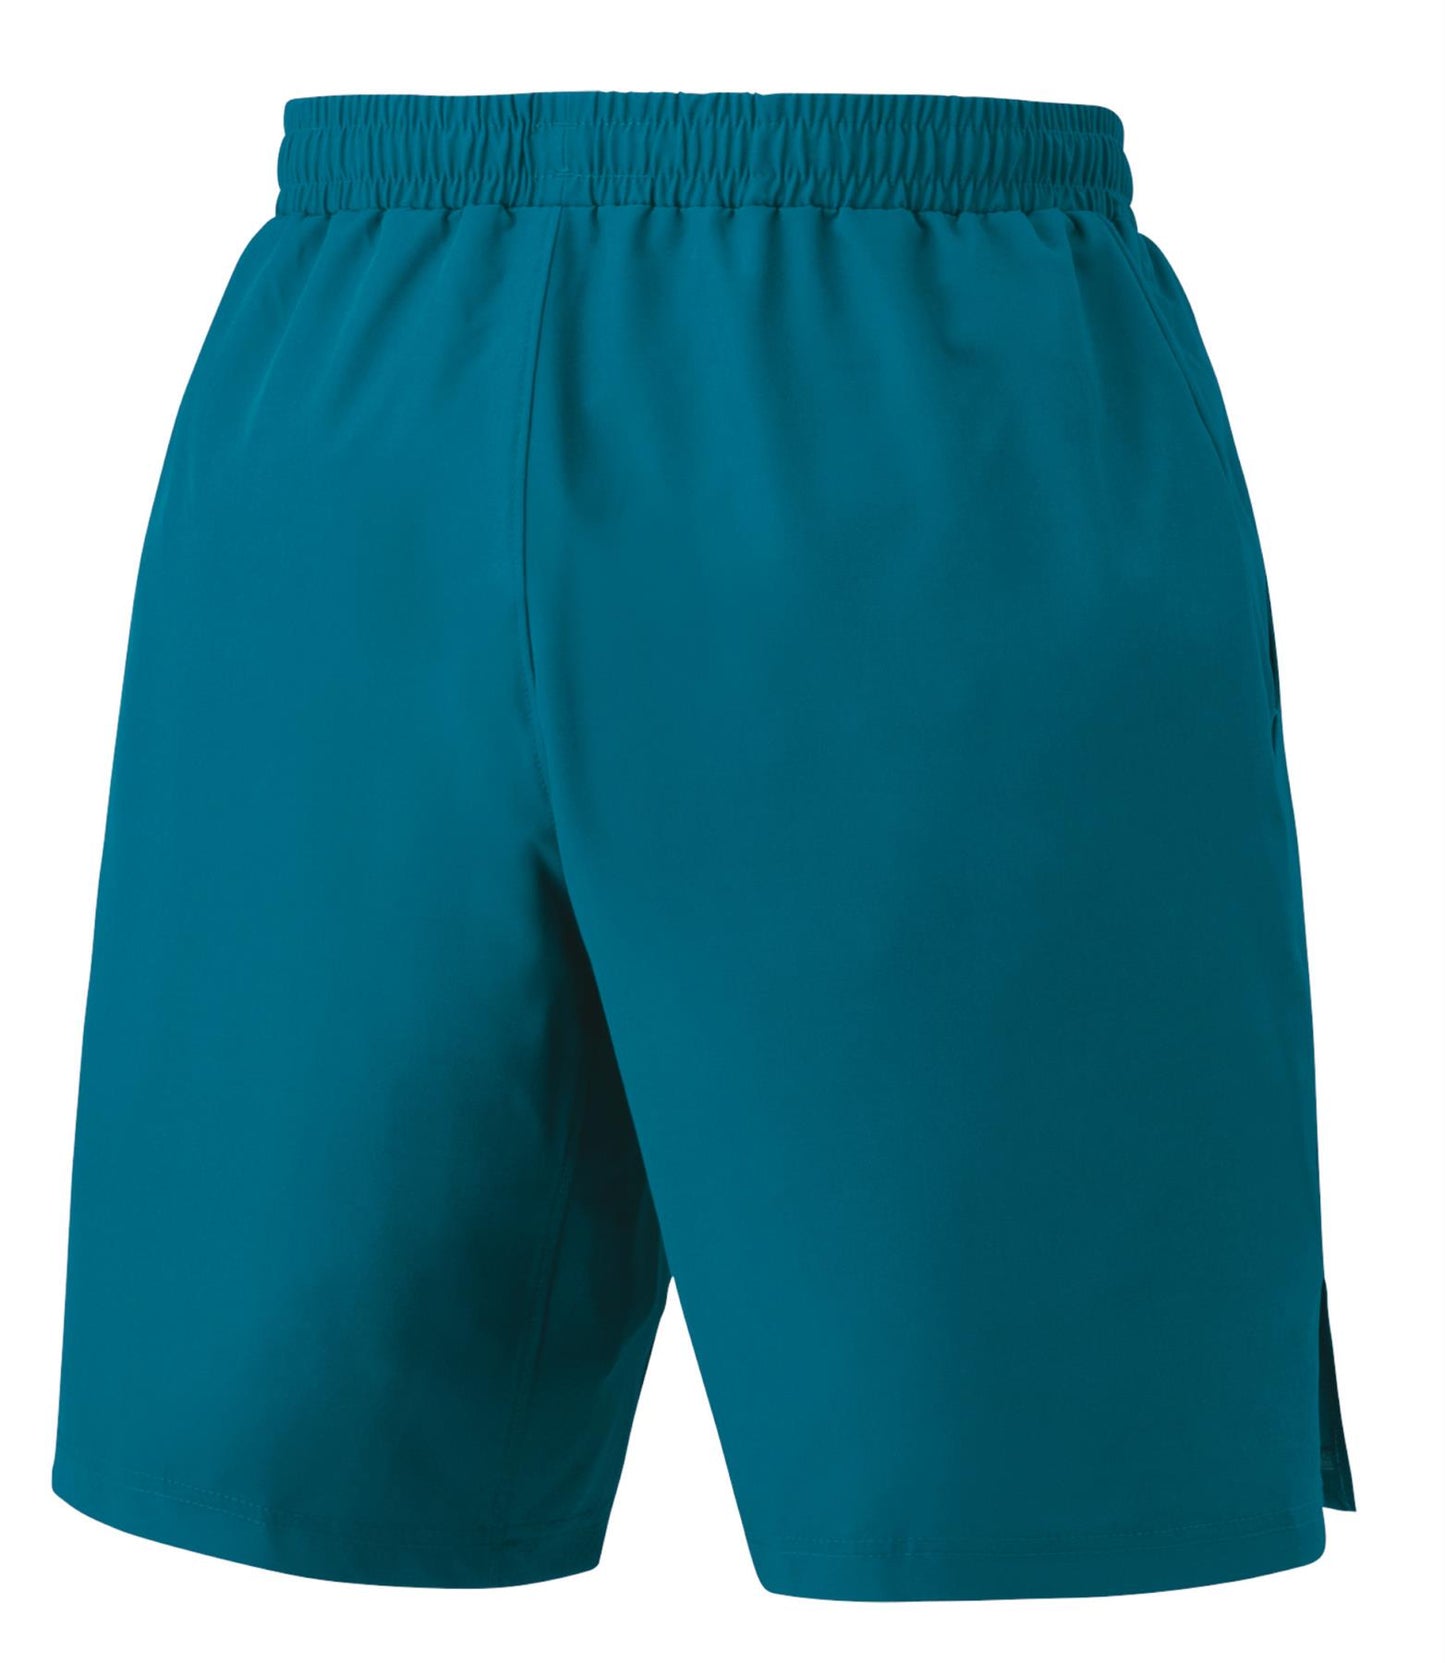 Yonex 15161EX Mens Badminton Shorts - Blue Green